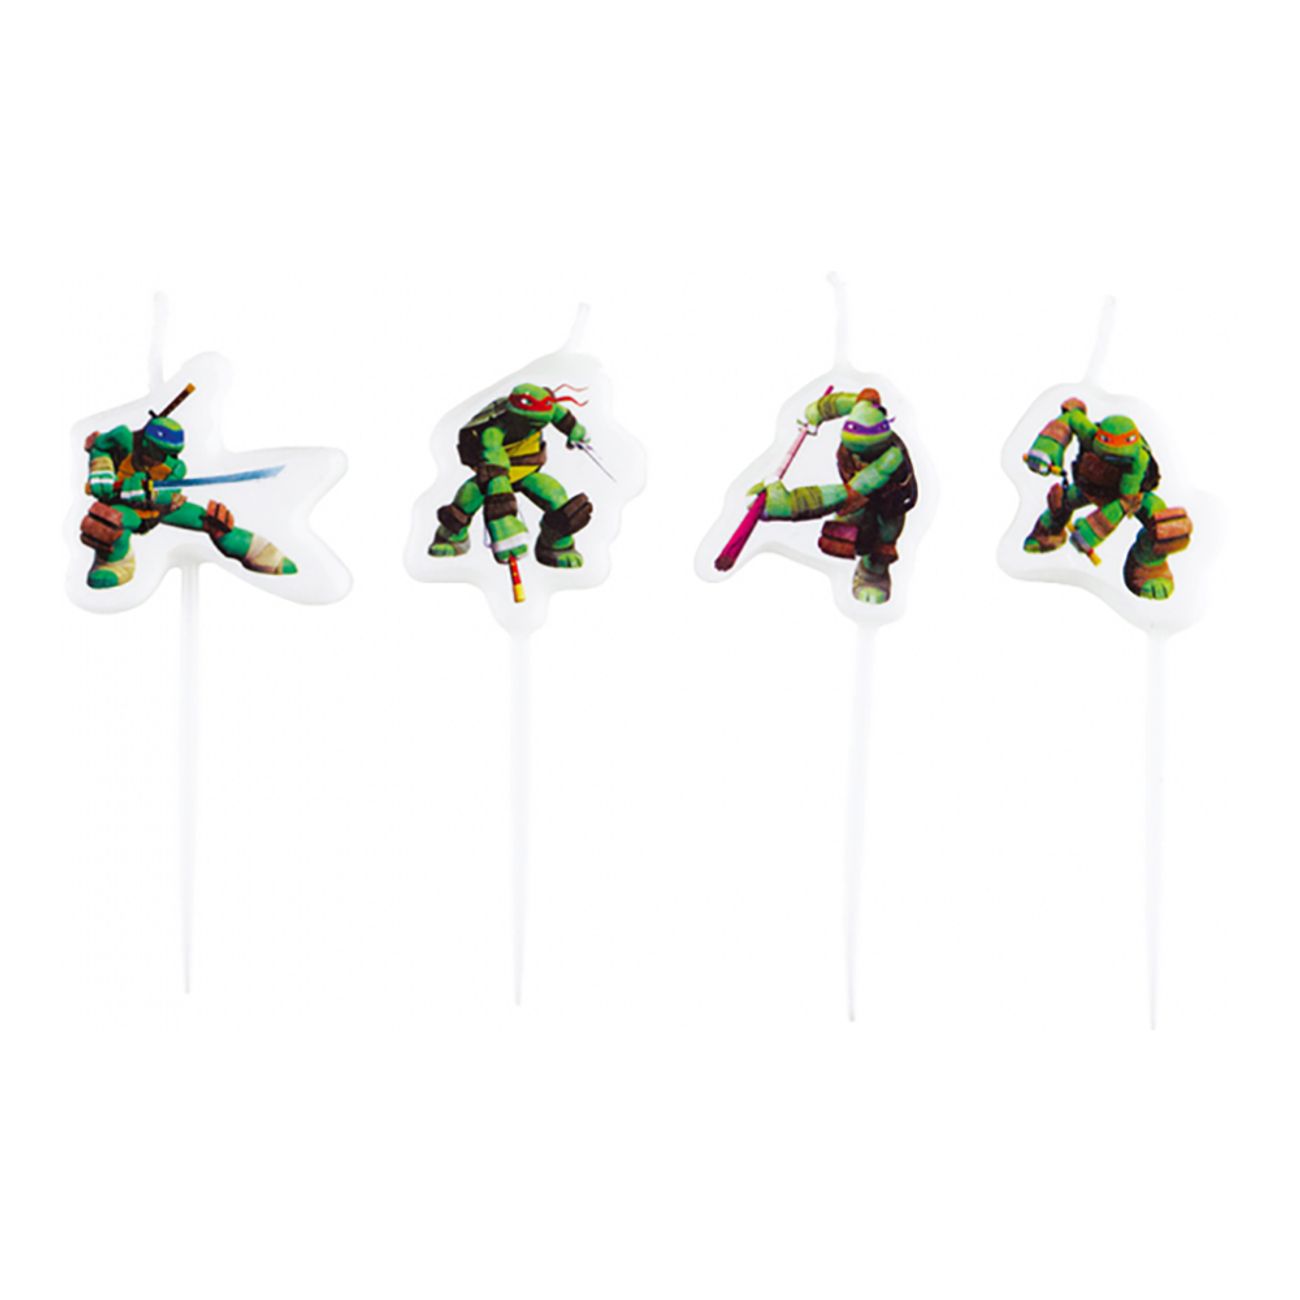 tartljus-mini-ninja-turtles-1